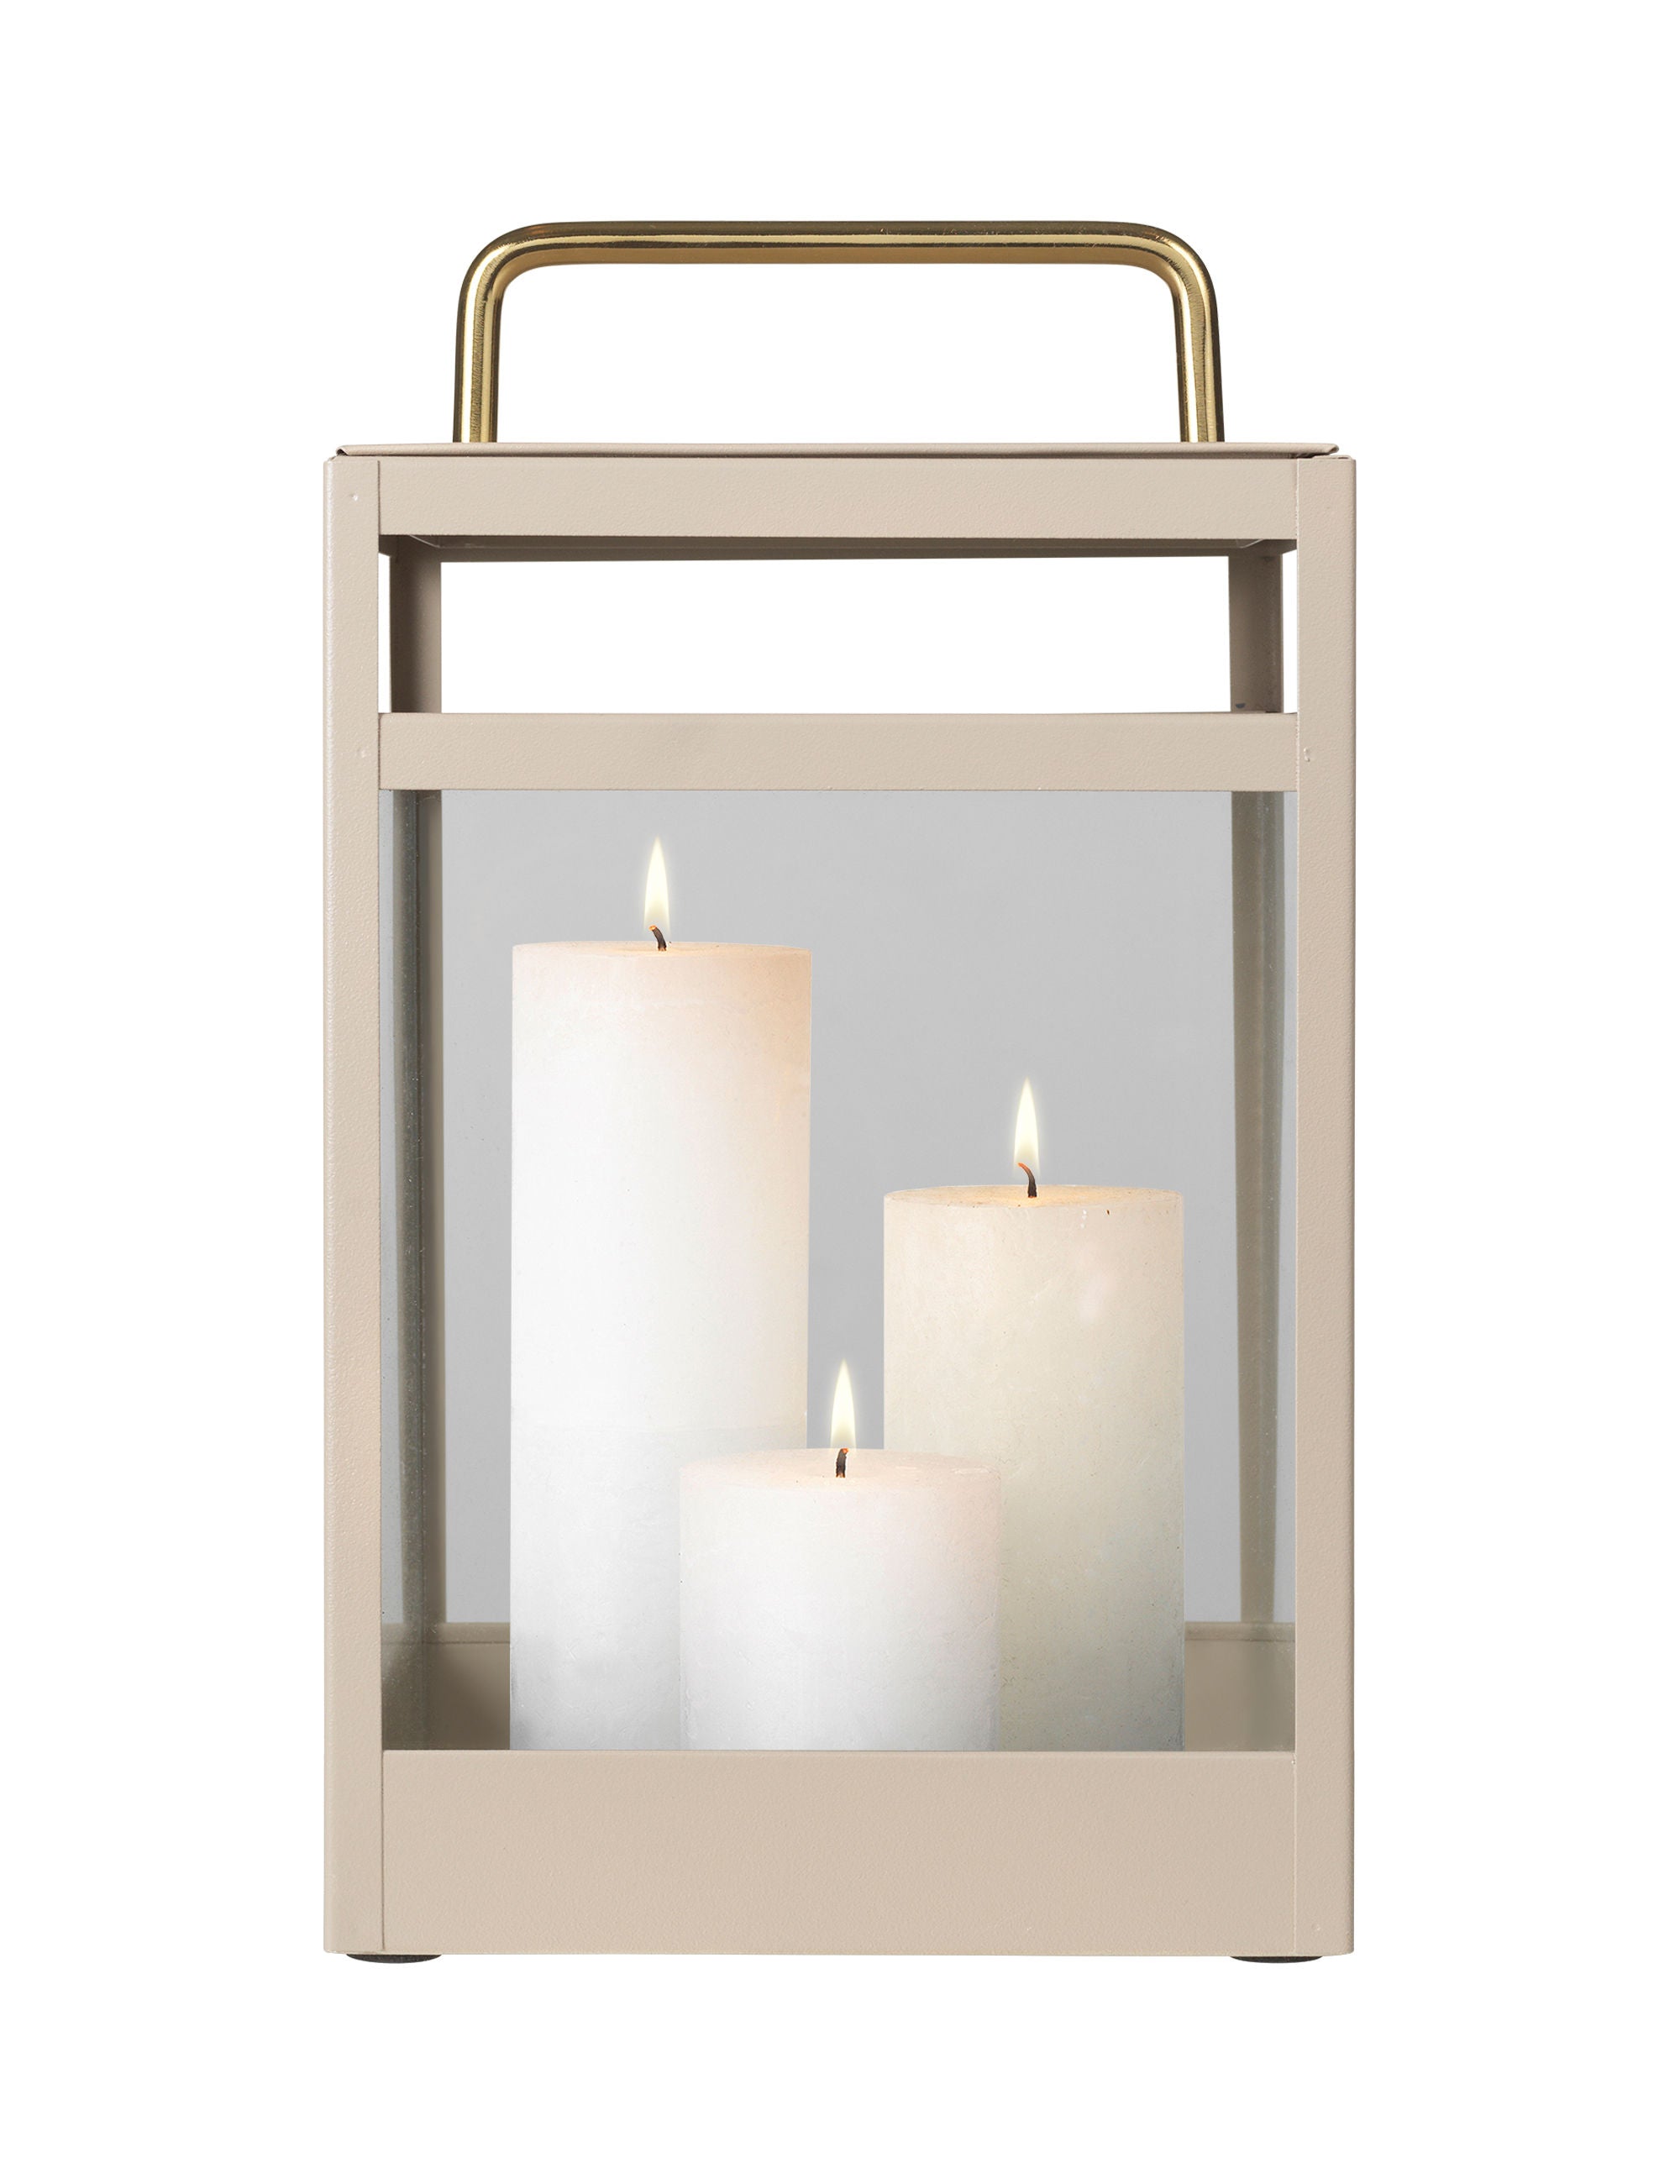 Beige lanterne med messing håndtag og sider i glas. Her ses lanternen med 3 lys.